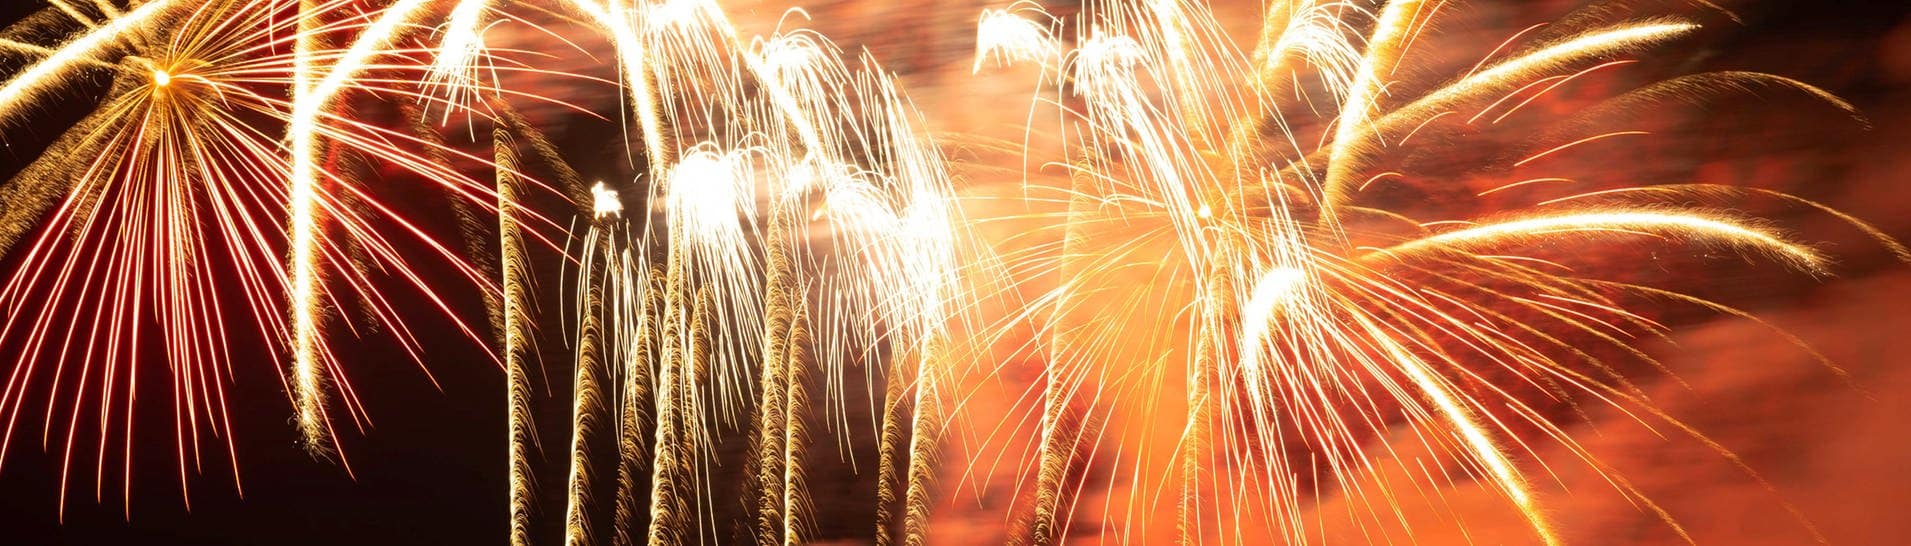 Böllerverbot: Feuerwerk an Silvester